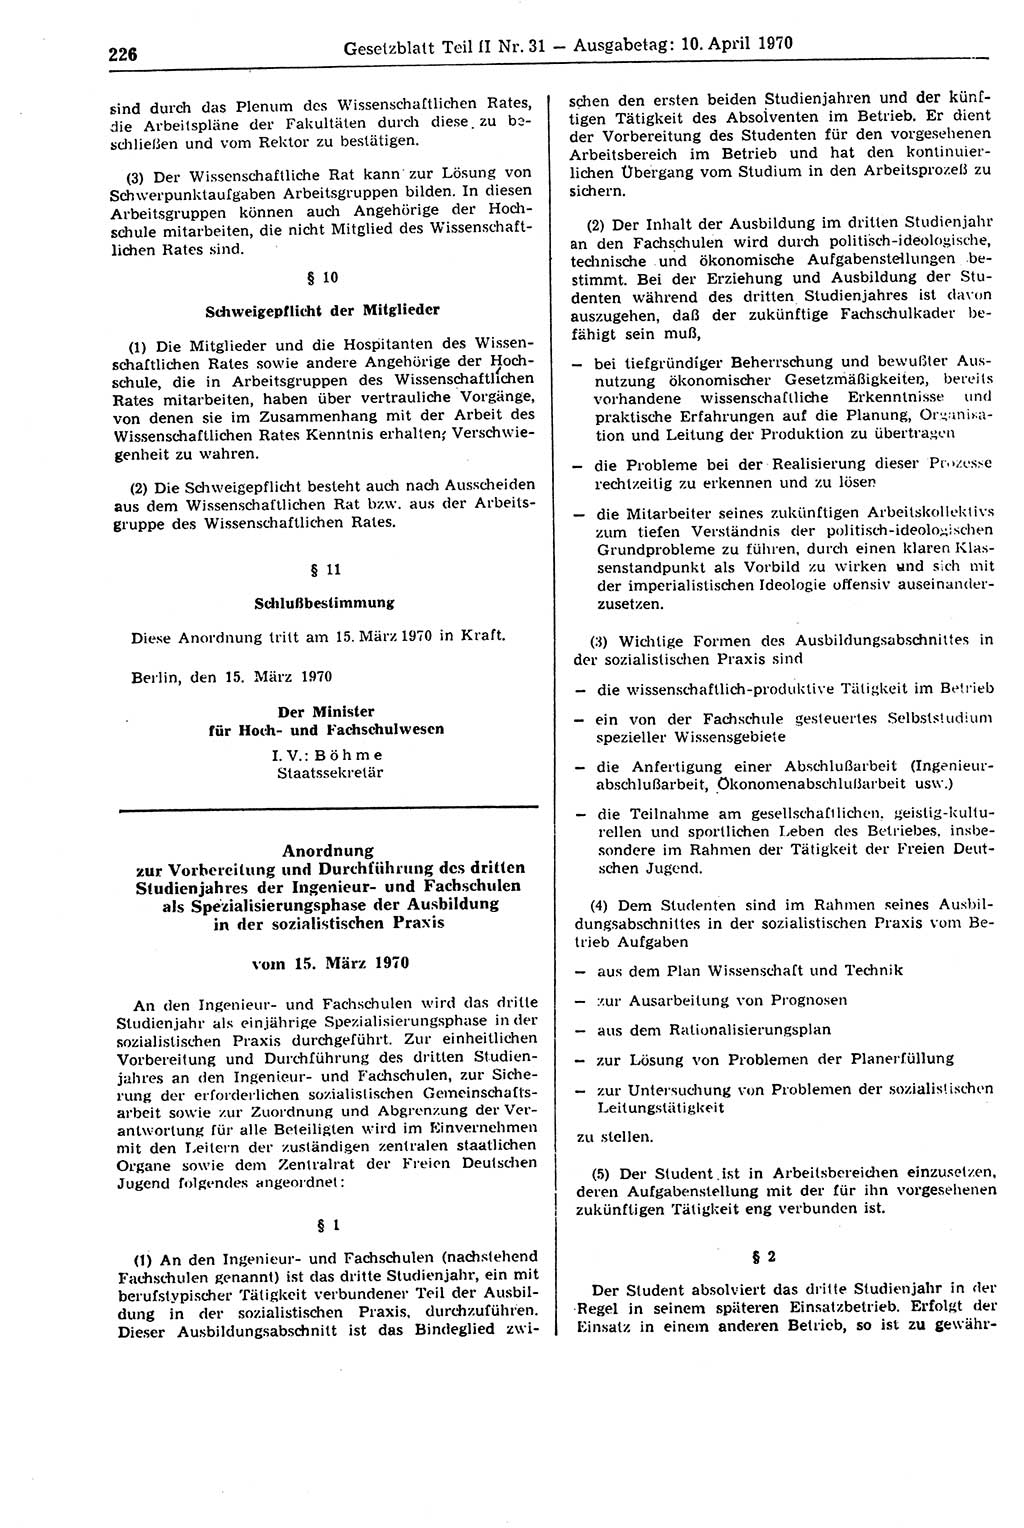 Gesetzblatt (GBl.) der Deutschen Demokratischen Republik (DDR) Teil ⅠⅠ 1970, Seite 226 (GBl. DDR ⅠⅠ 1970, S. 226)